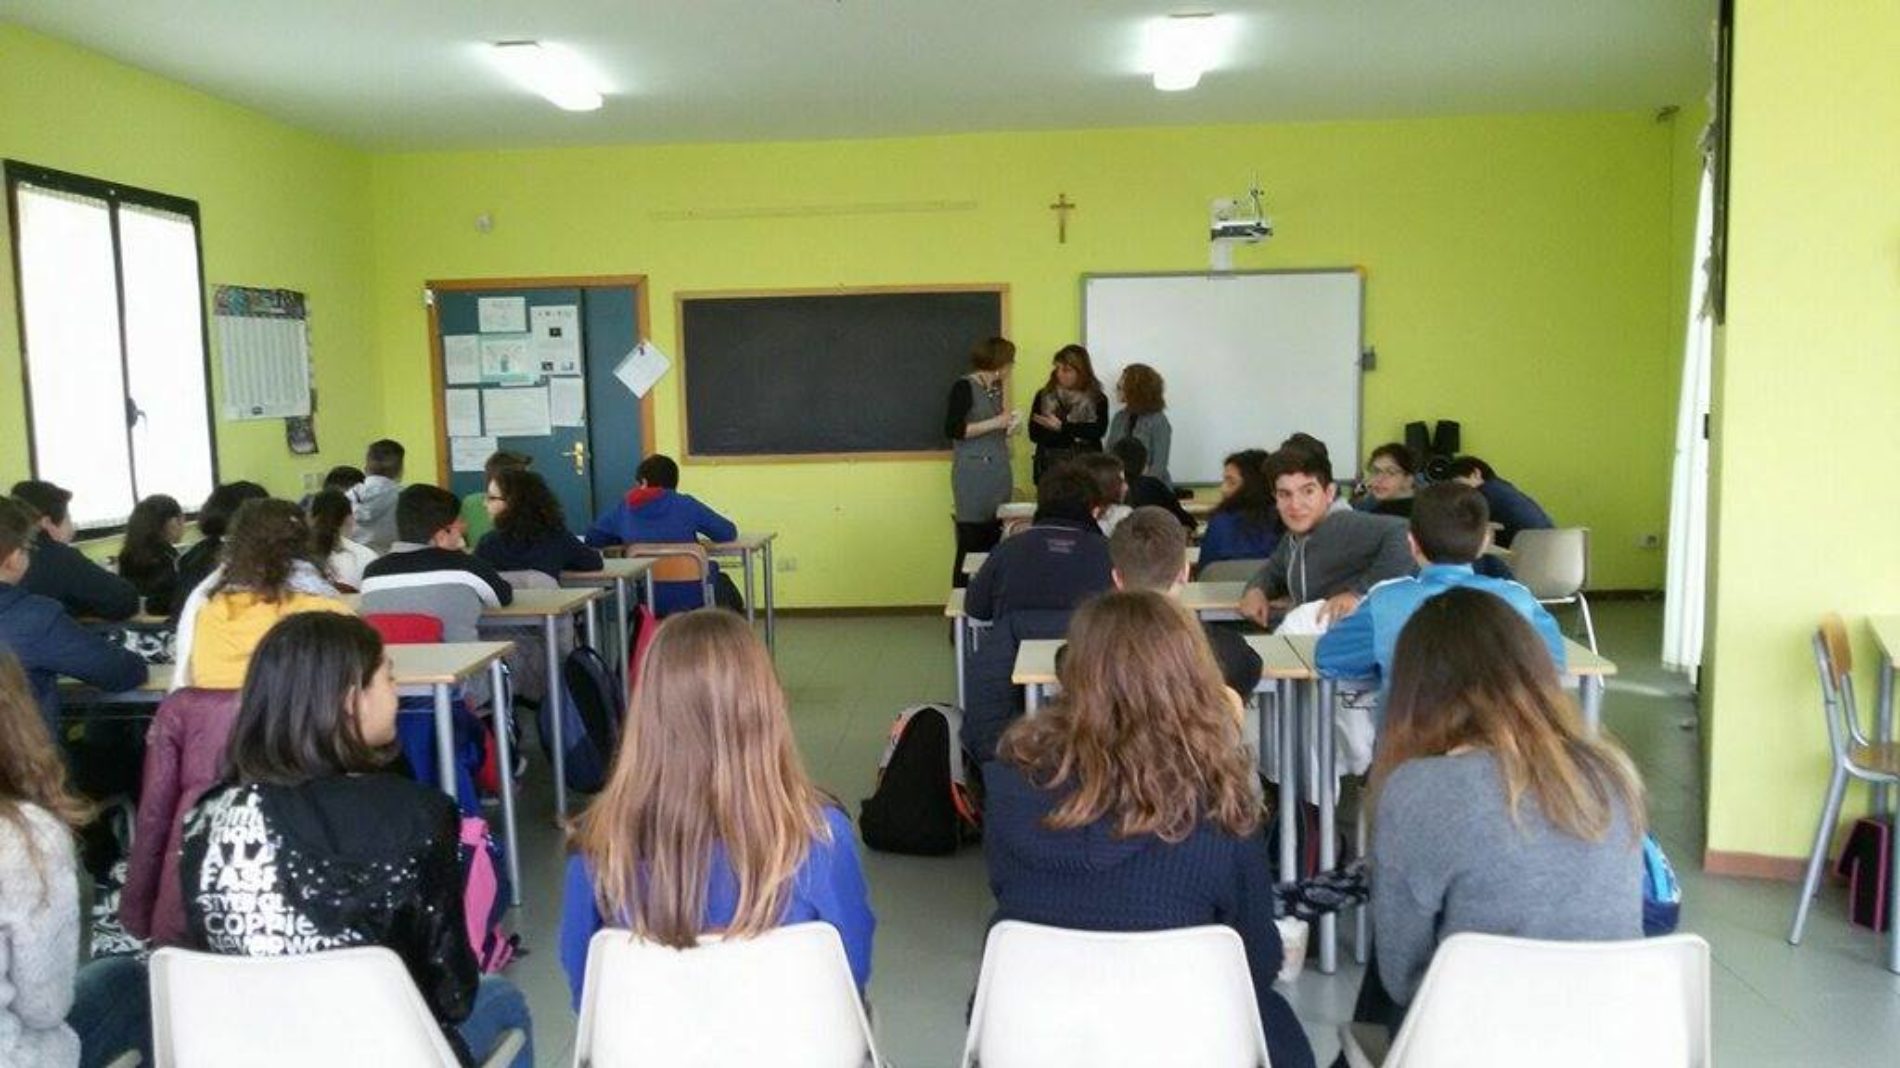 IL VALORE DEL VOLONTARIATO ed EDUCAZIONE ALLA LEGALITÀ tra i progetti della Scuola Secondaria “Don Milani”